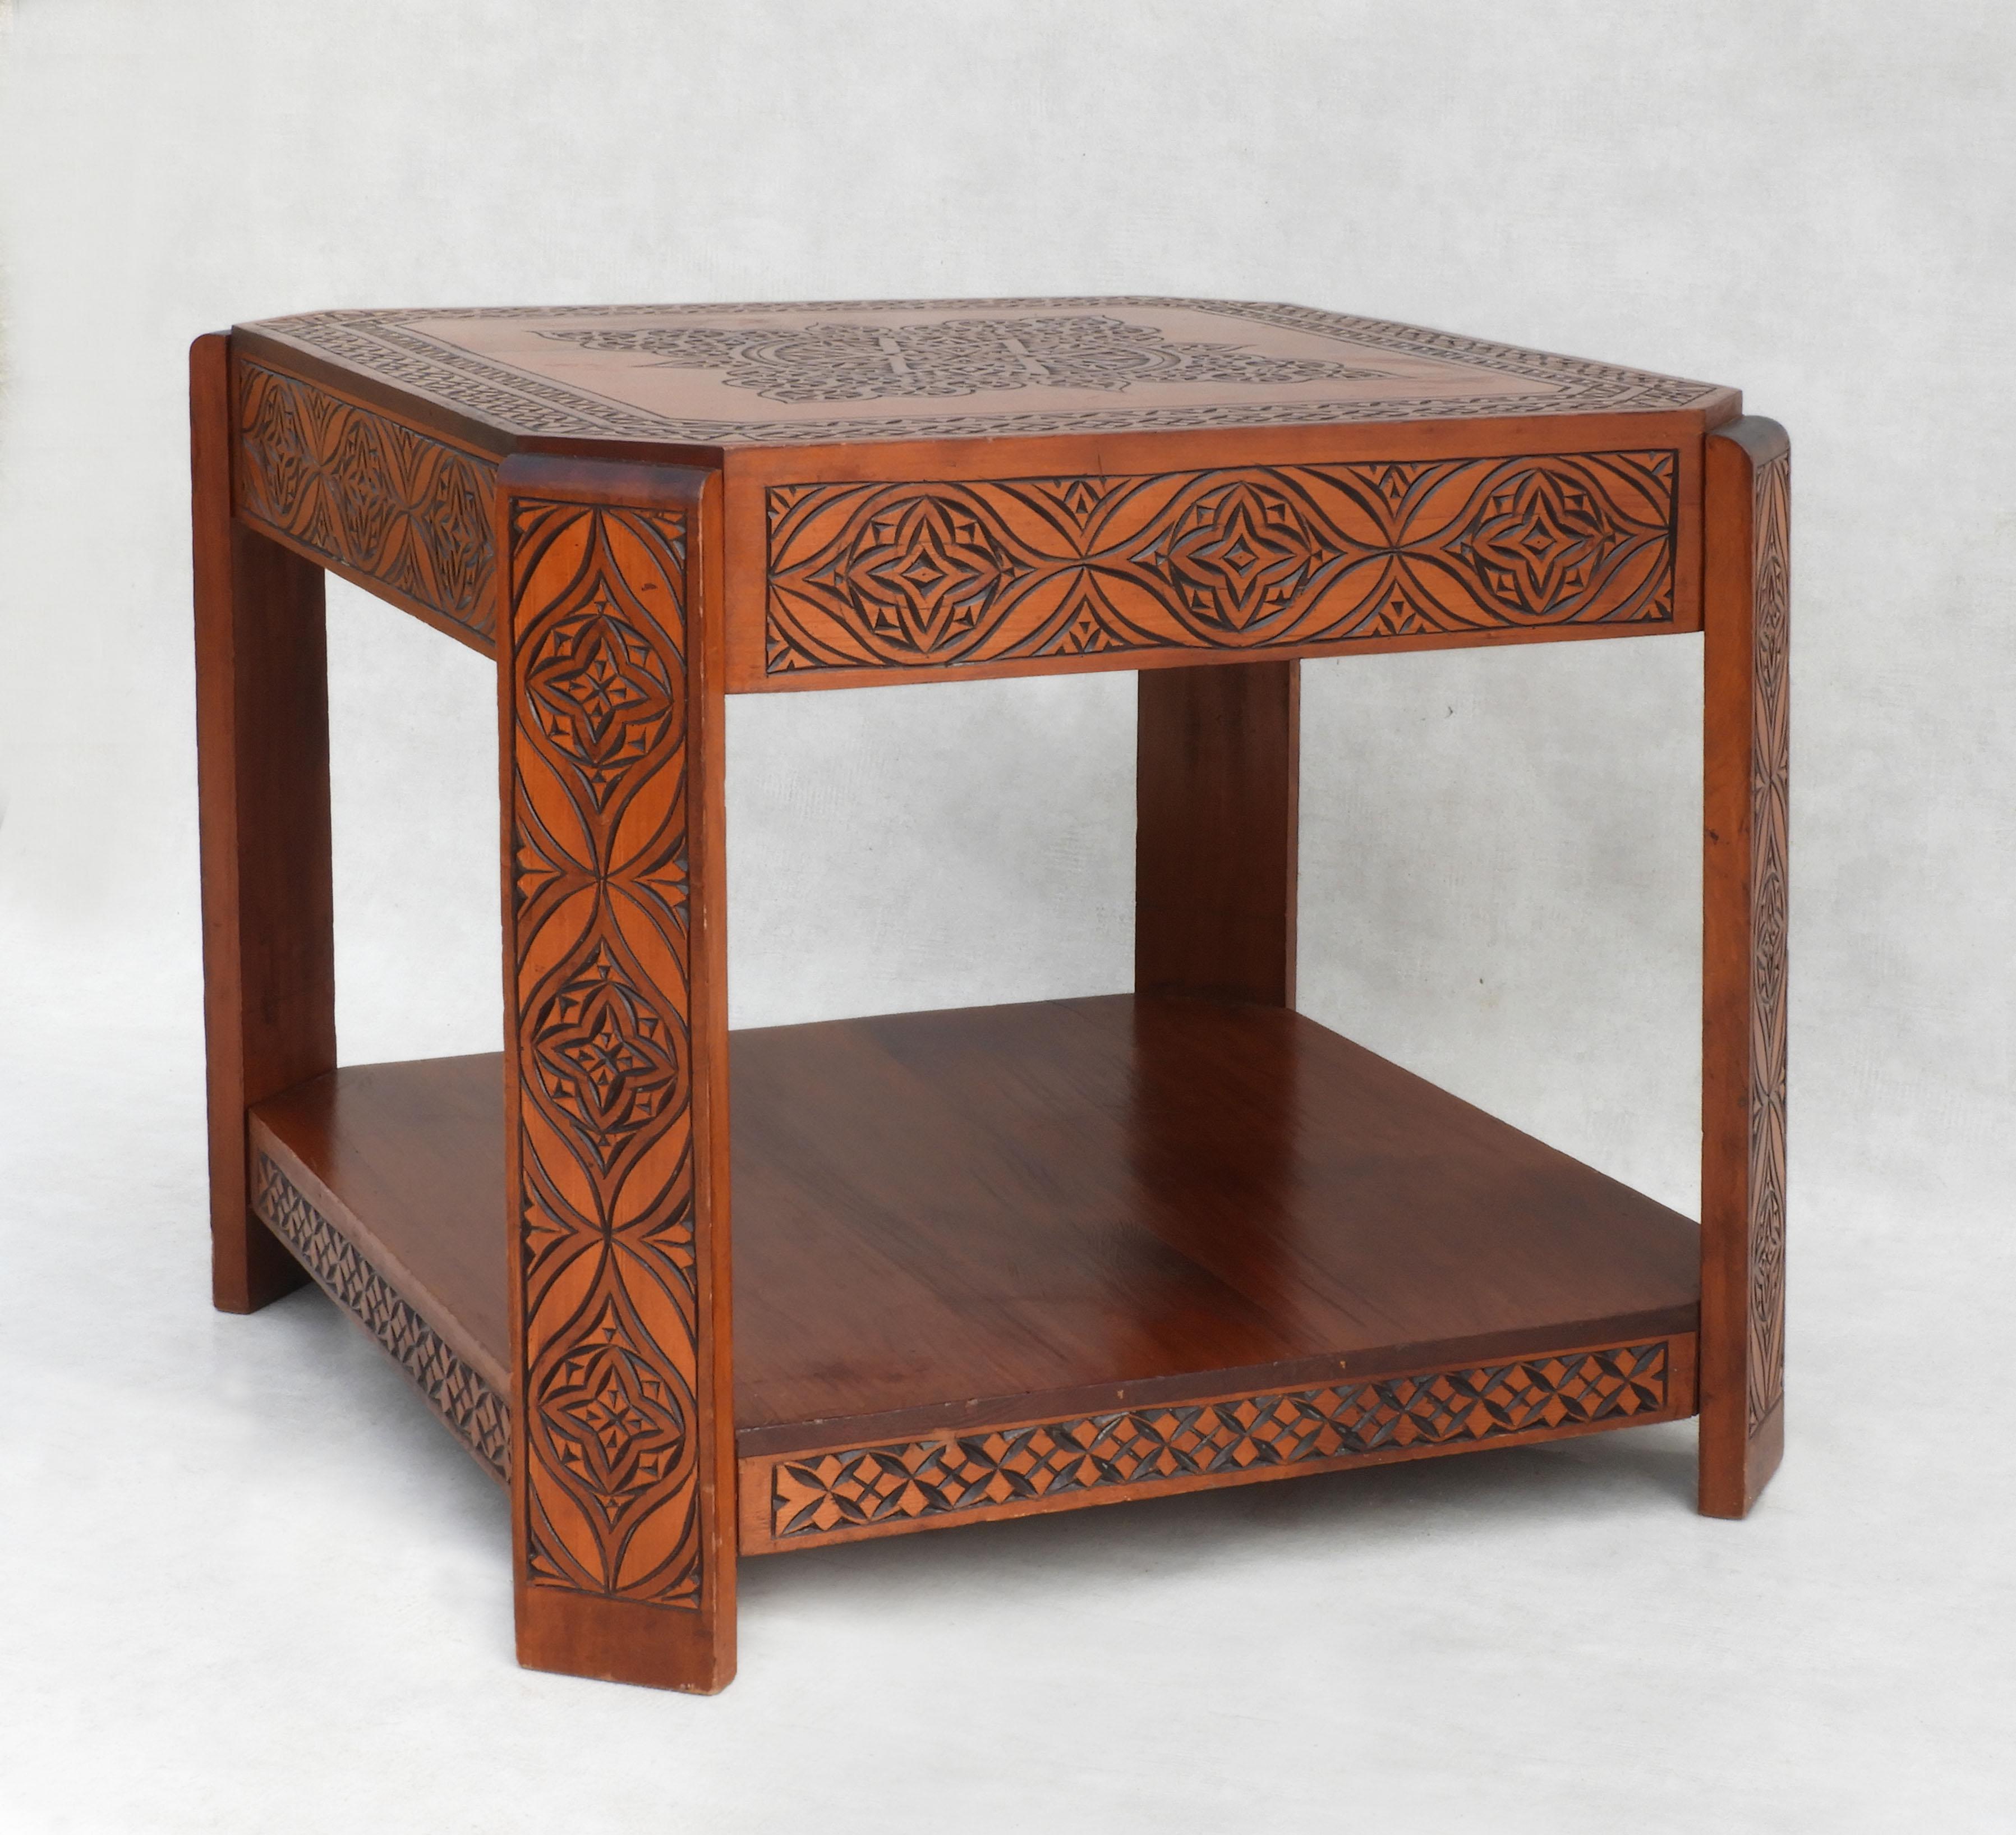 Table basse vintage marocaine décorée à la main C1950
Format carré attrayant à deux niveaux avec des accents incurvés de style Art déco tardif.
Sculptée à la main avec des motifs floraux et géométriques mauresques.
Un joli accent bohémien à ajouter